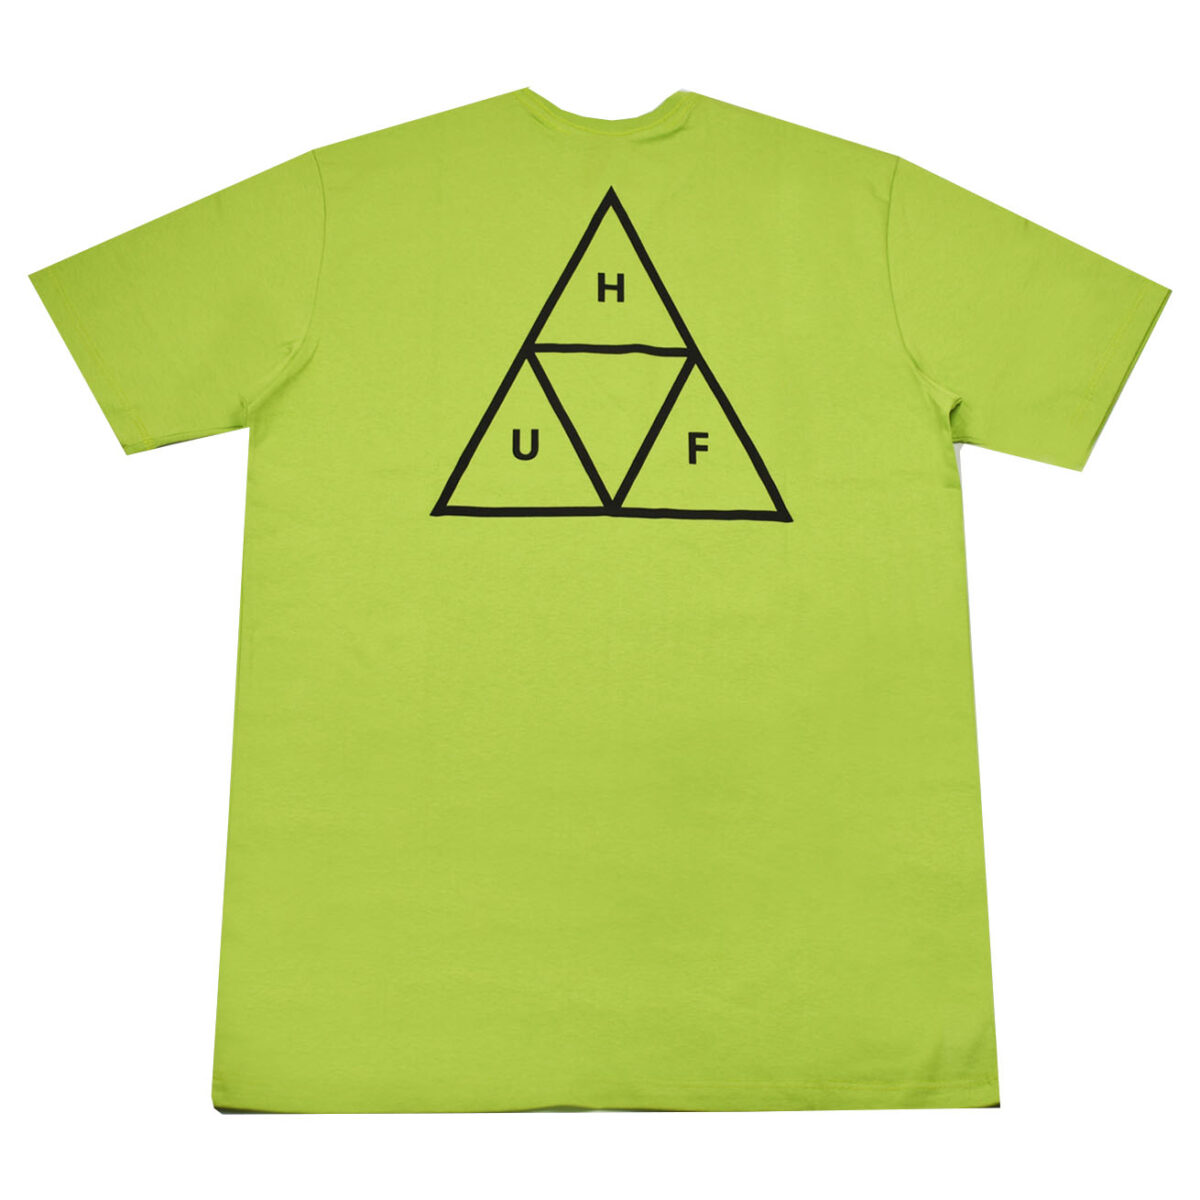 Camiseta Huf Essentials TT Green